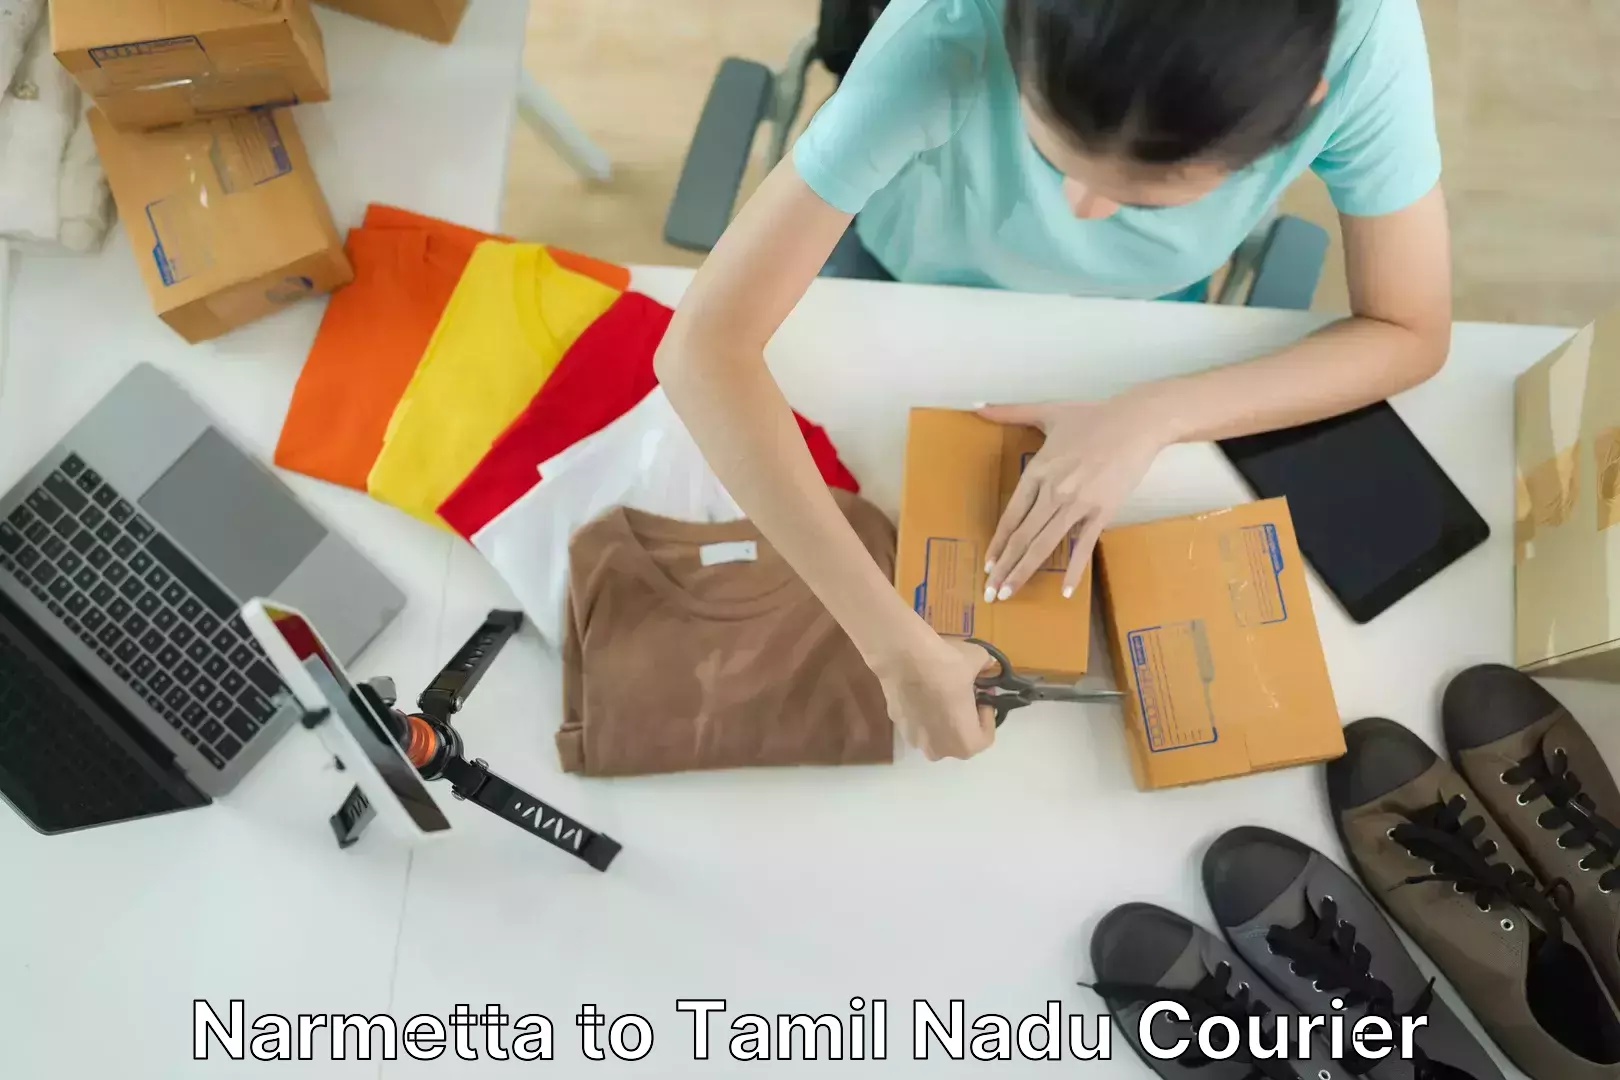 Professional moving assistance Narmetta to Tamil Nadu